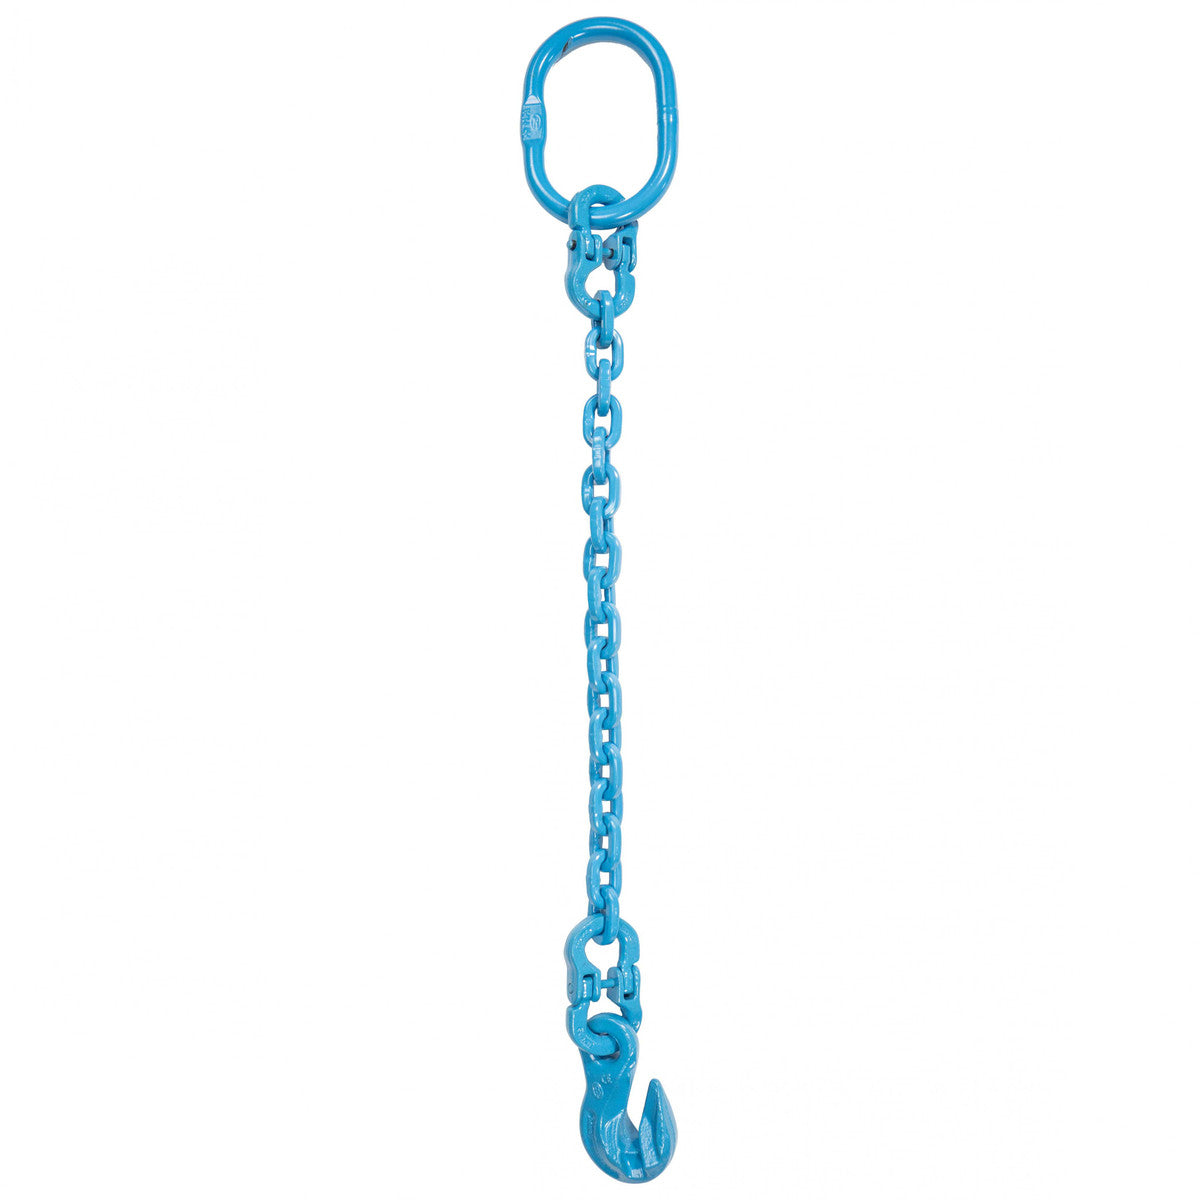 9/32" x 18' - Pewag Single Leg Chain Sling w/ Grab Hook - Grade 120